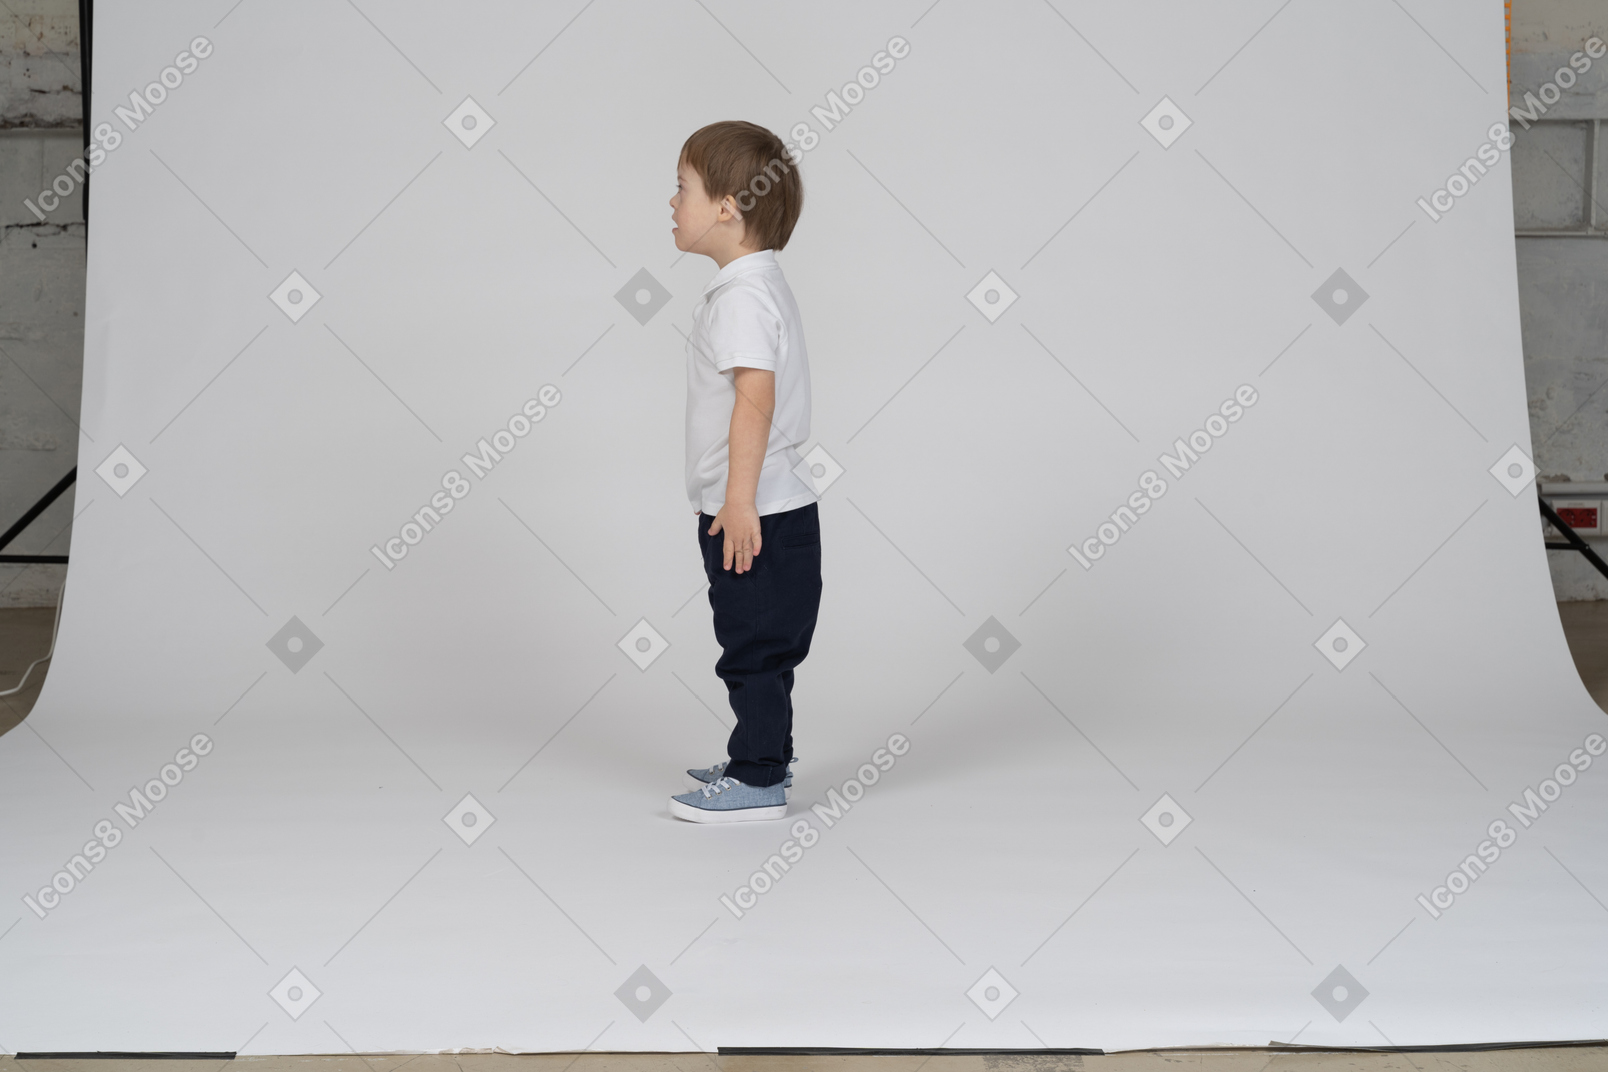 Niño pequeño de pie con los brazos a los lados